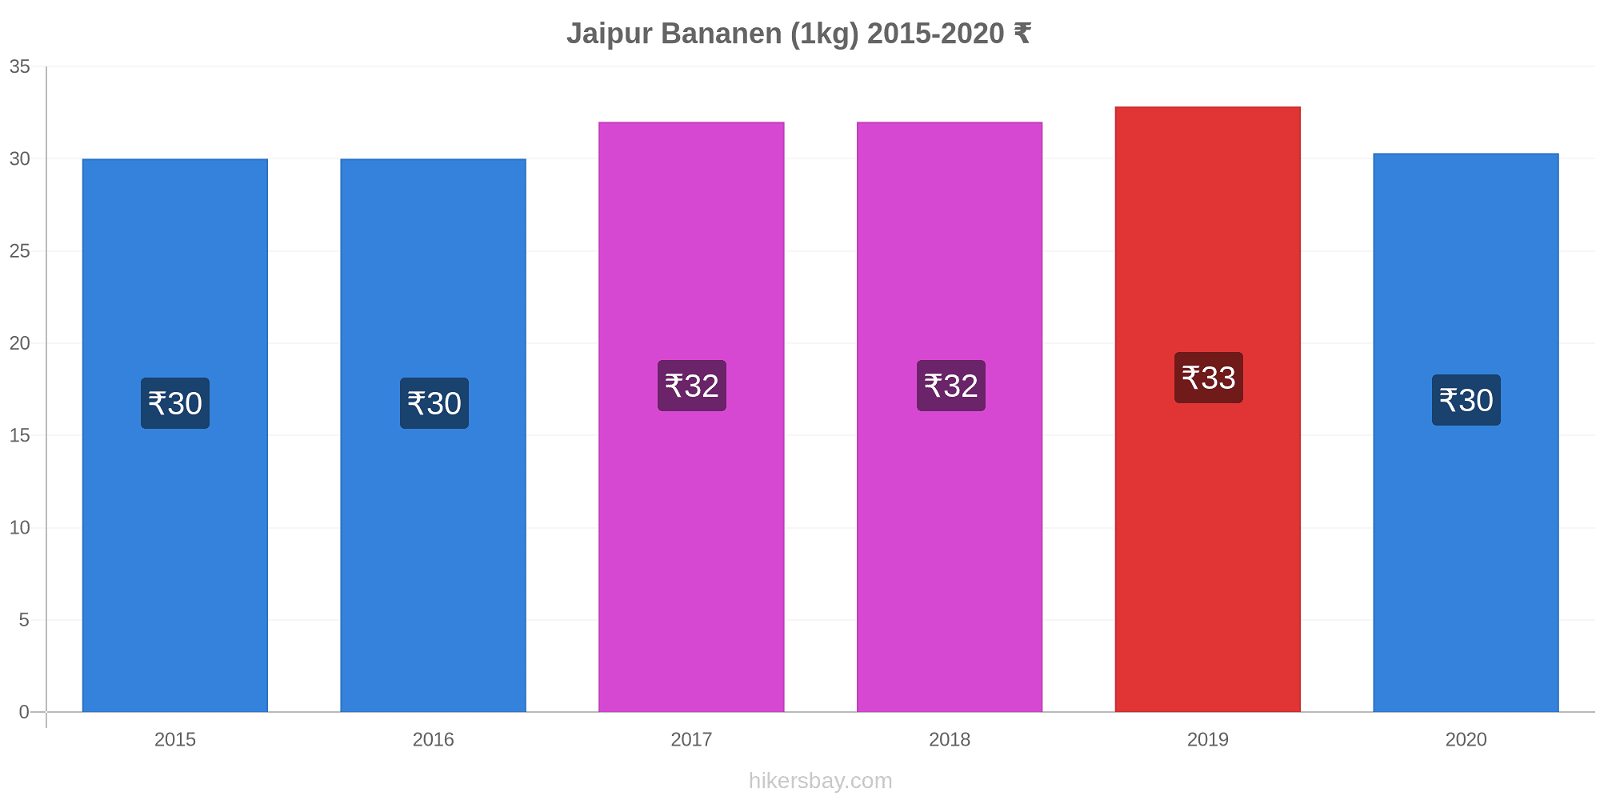 Jaipur prijswijzigingen Banaan (1kg) hikersbay.com